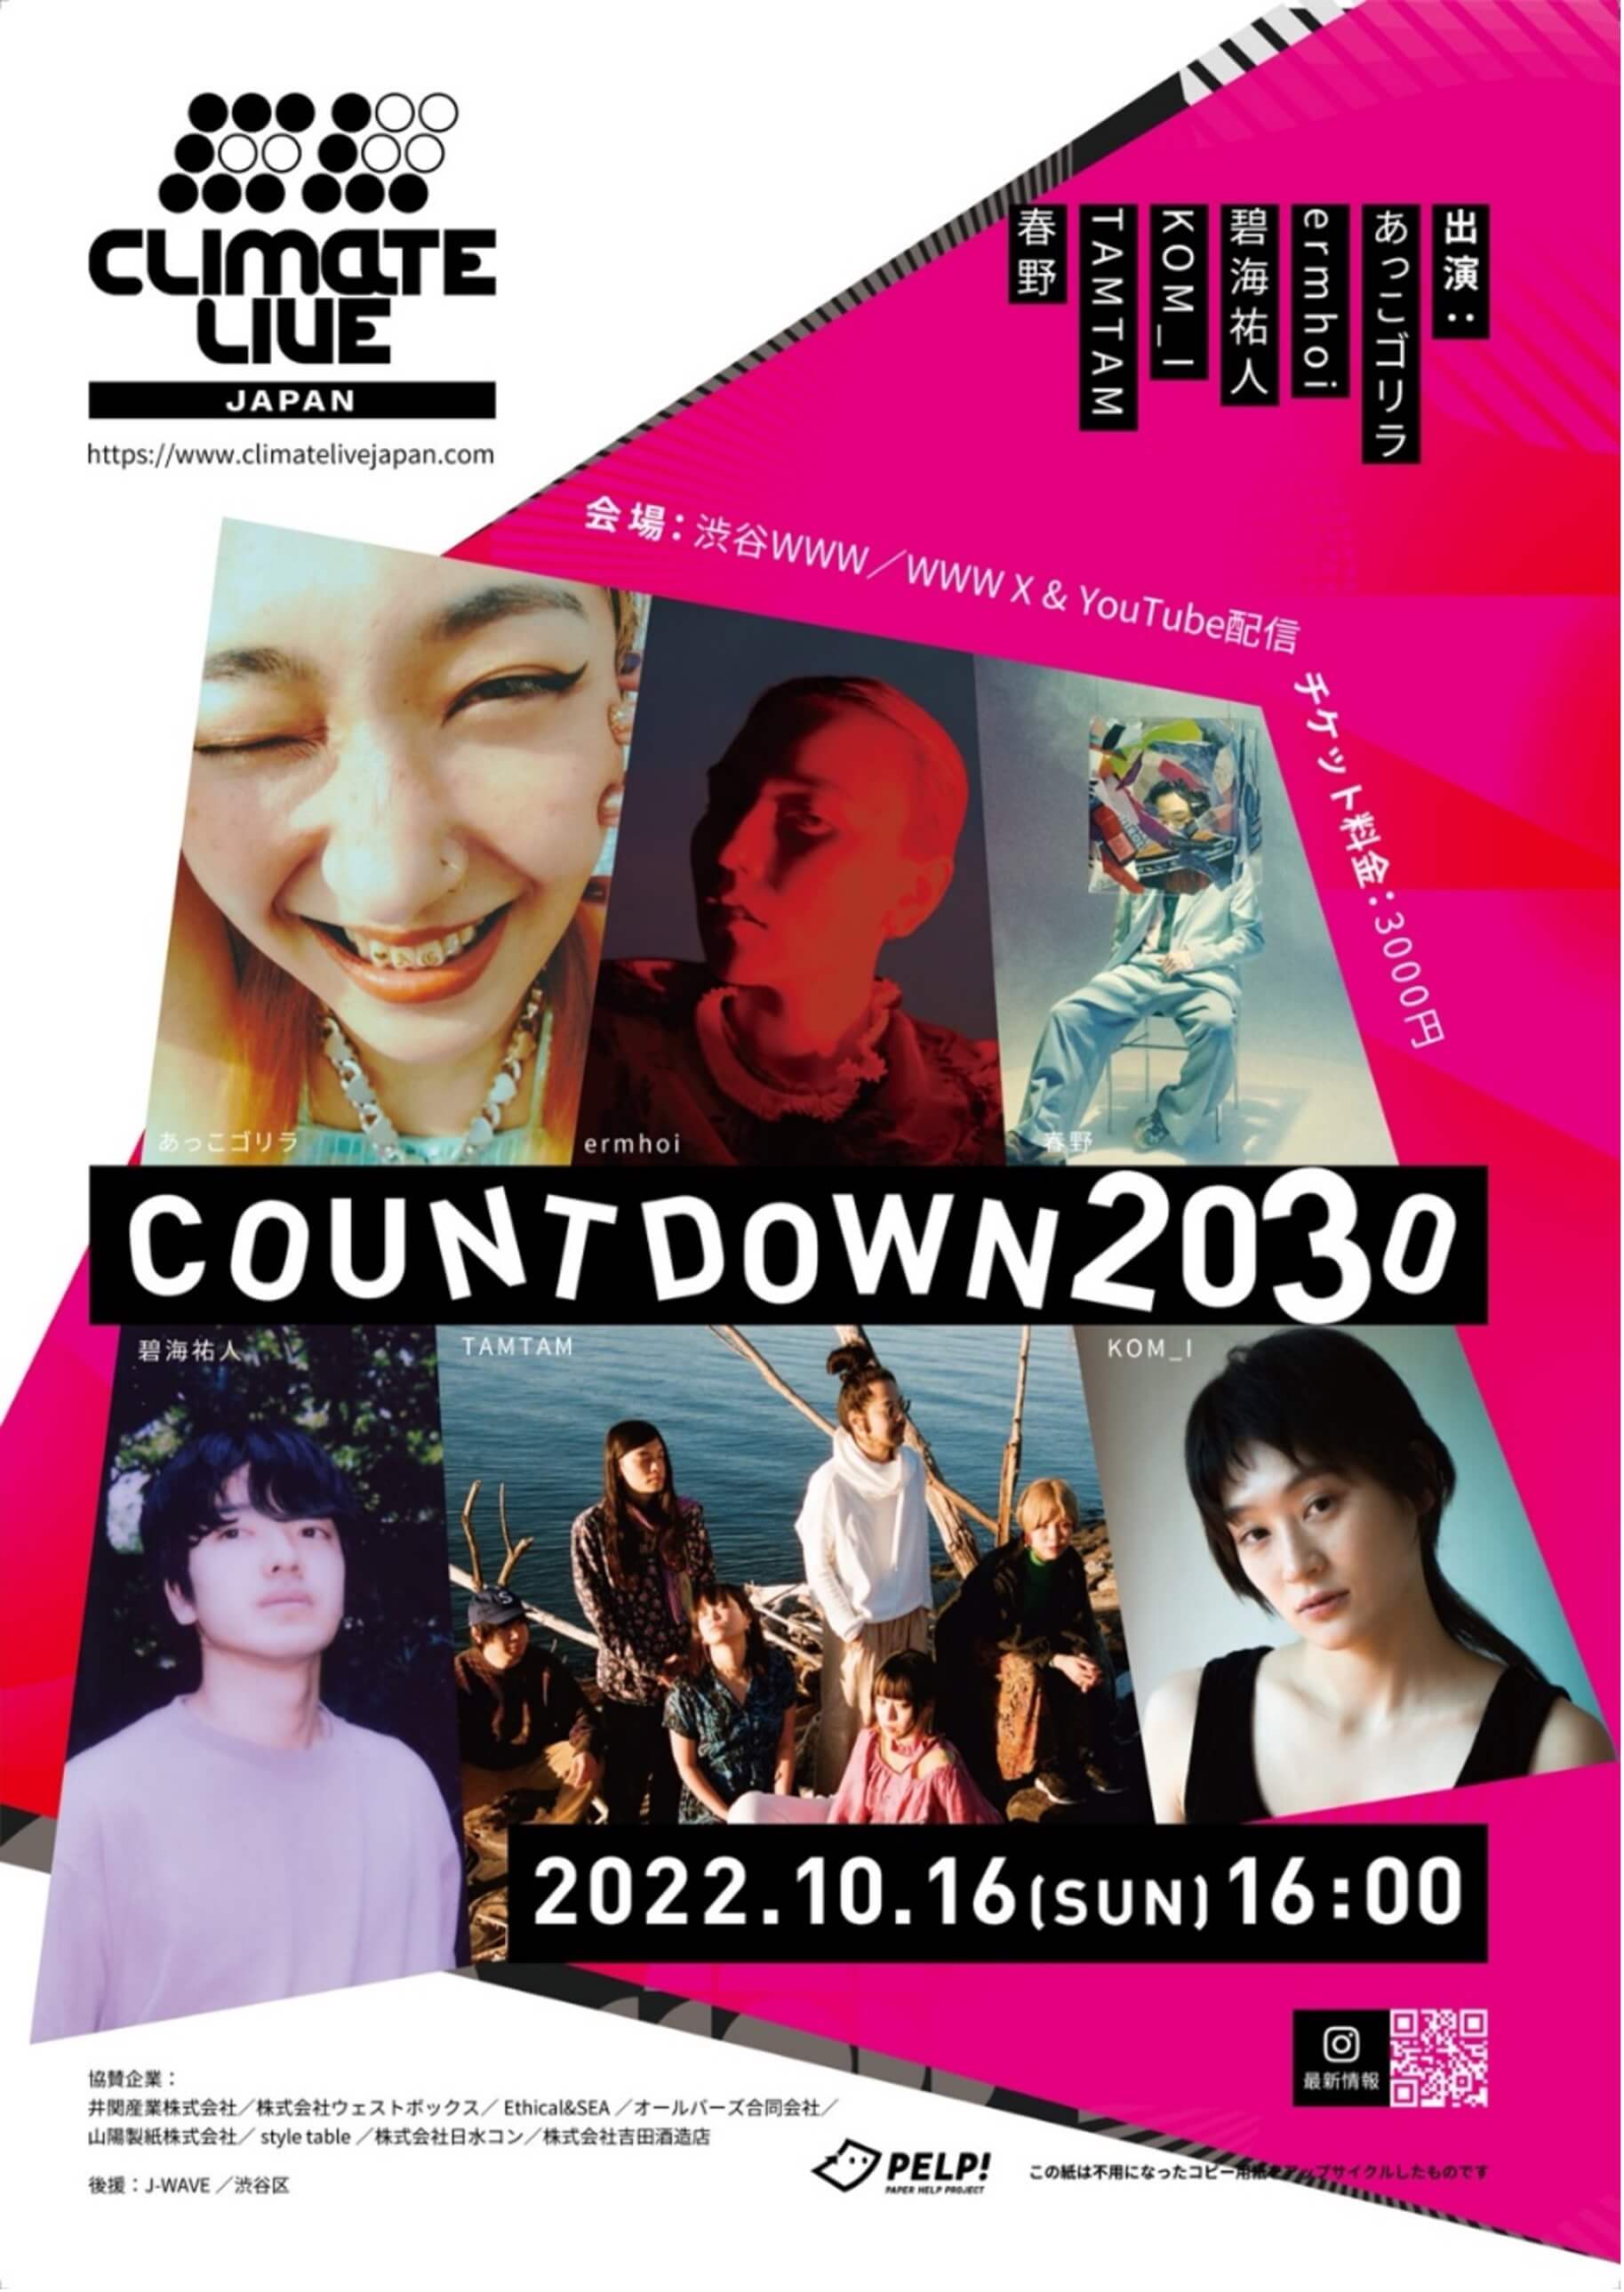 気候危機を考える音楽ライブイベント「Climate Live Japan ~COUNTDOWN2030~」が開催されました。